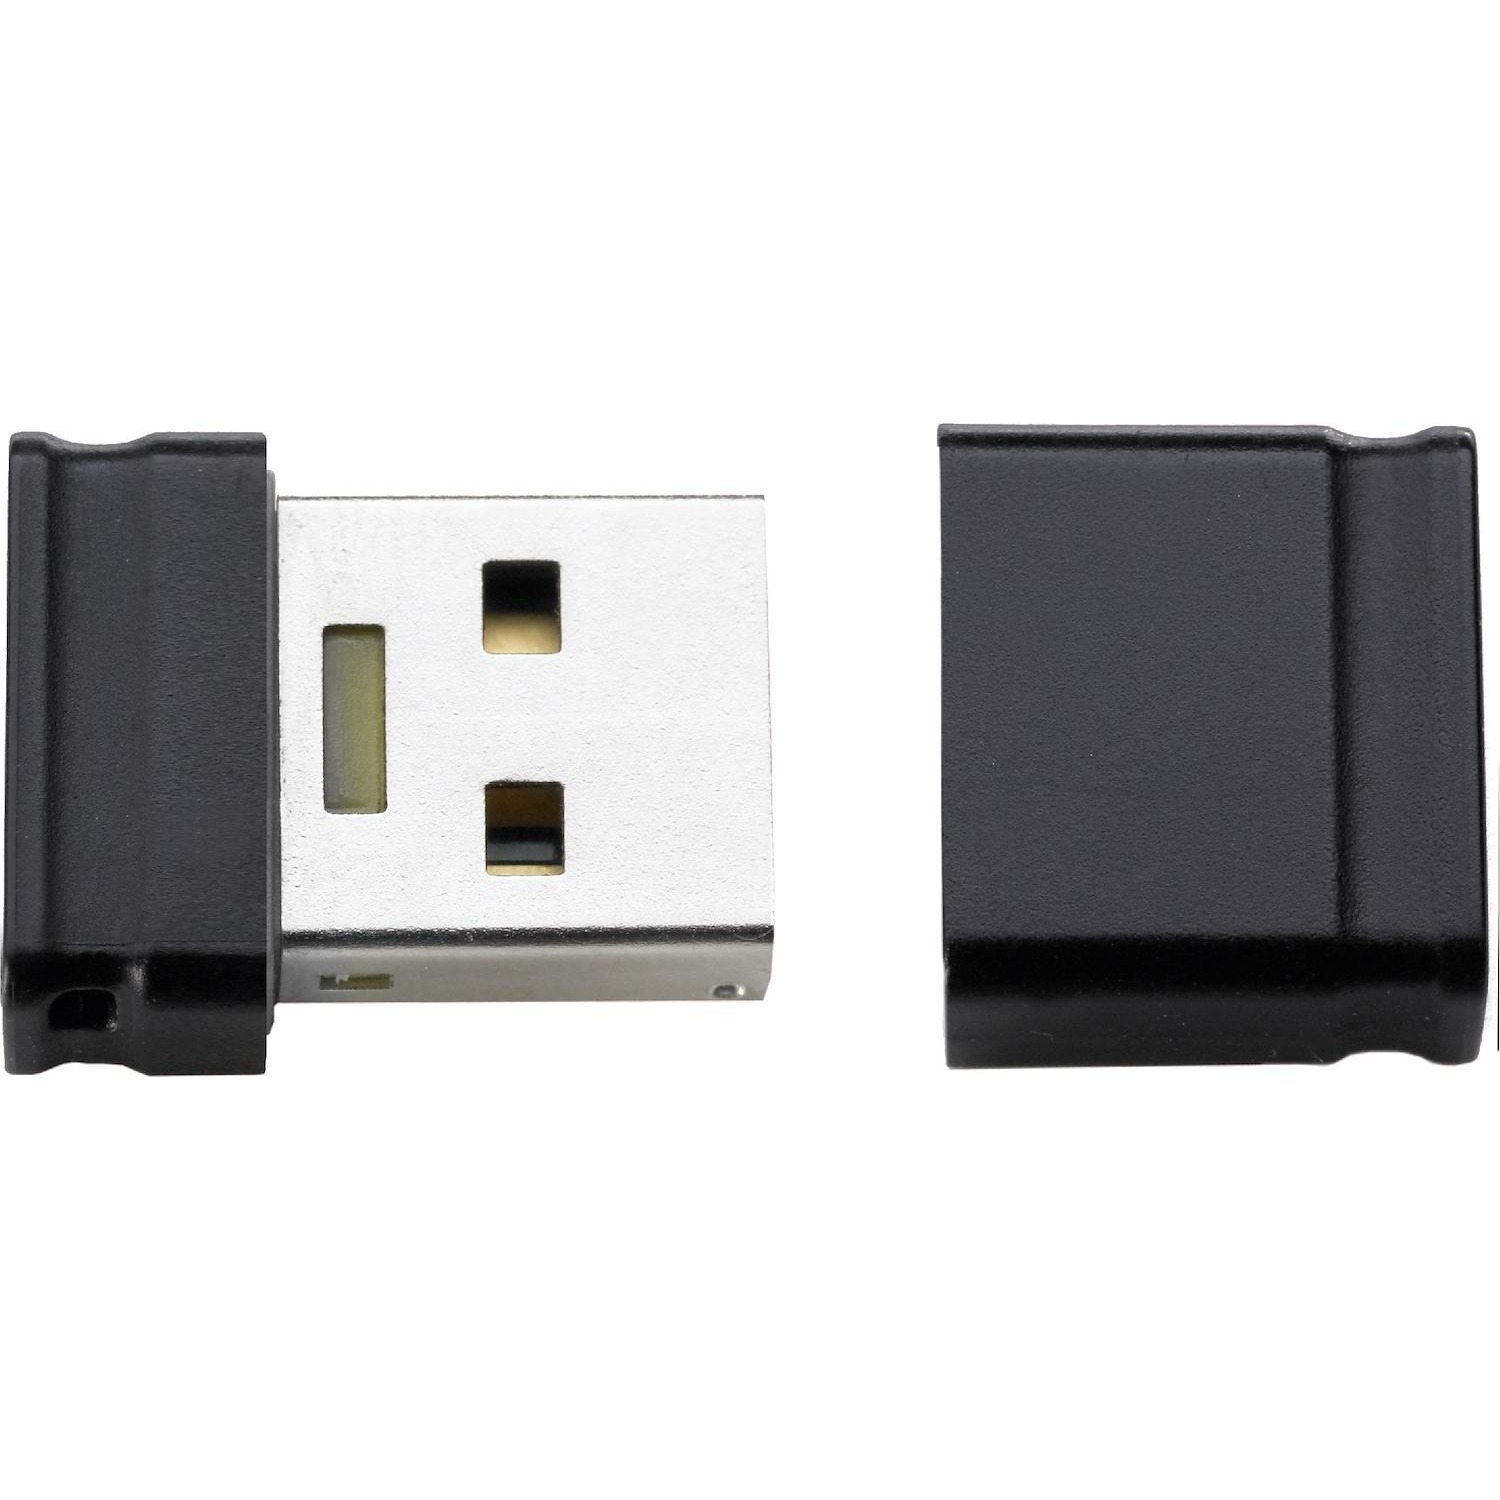 Immagine per Memoria USB Intenso Microline 16GB da DIMOStore